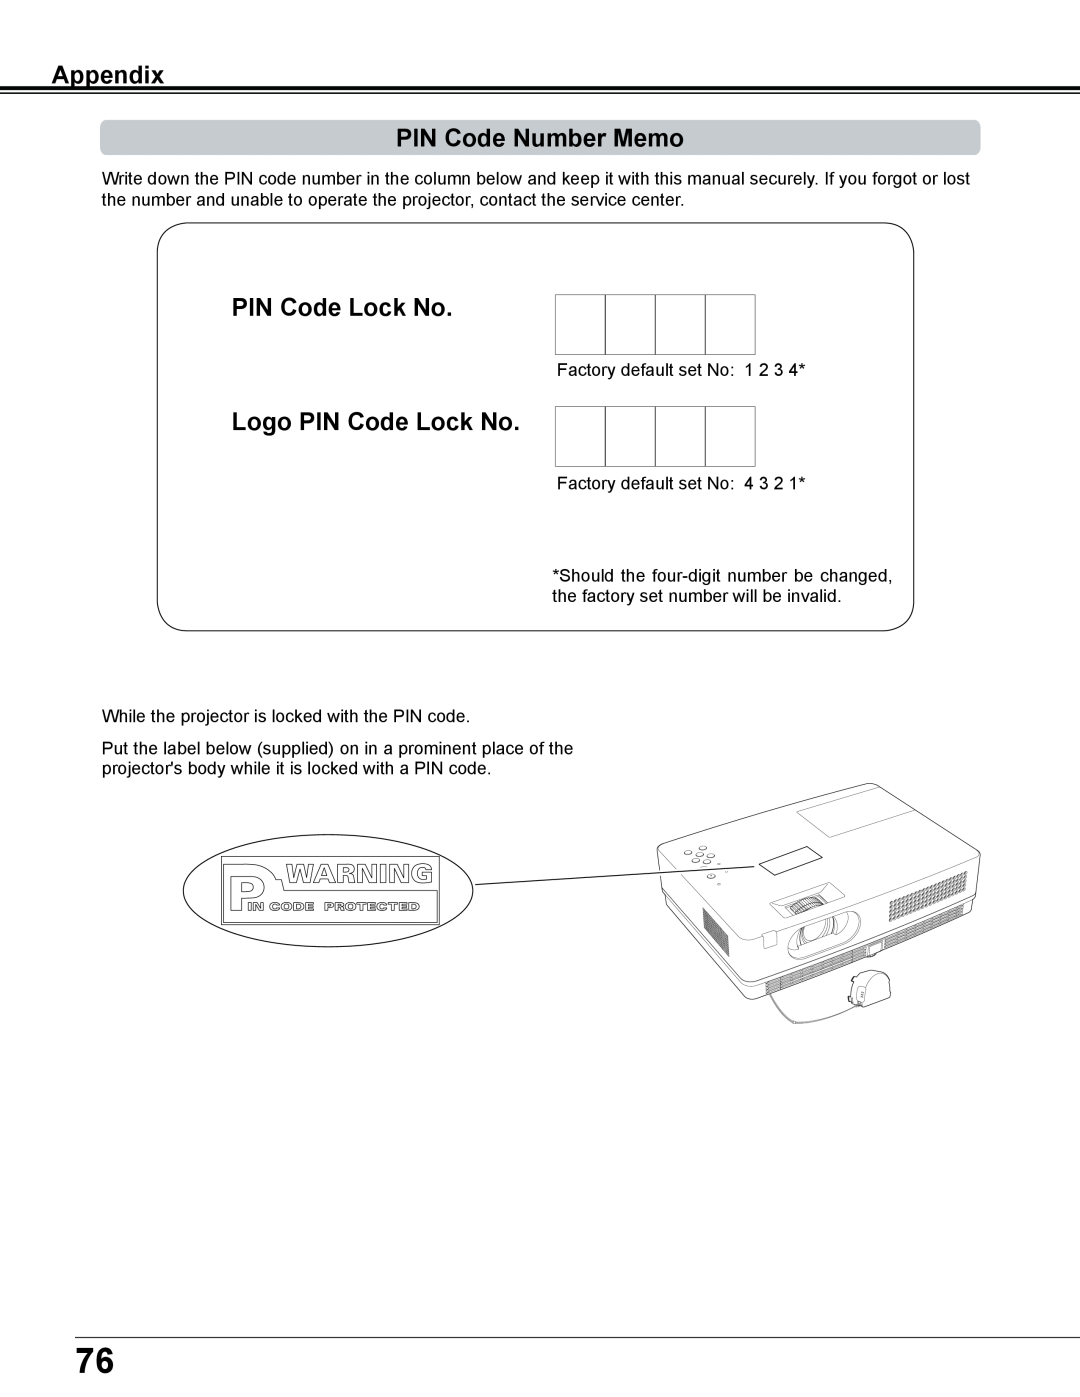 Sanyo PLC-XE34 owner manual Appendix PIN Code Number Memo, Logo PIN Code Lock No 